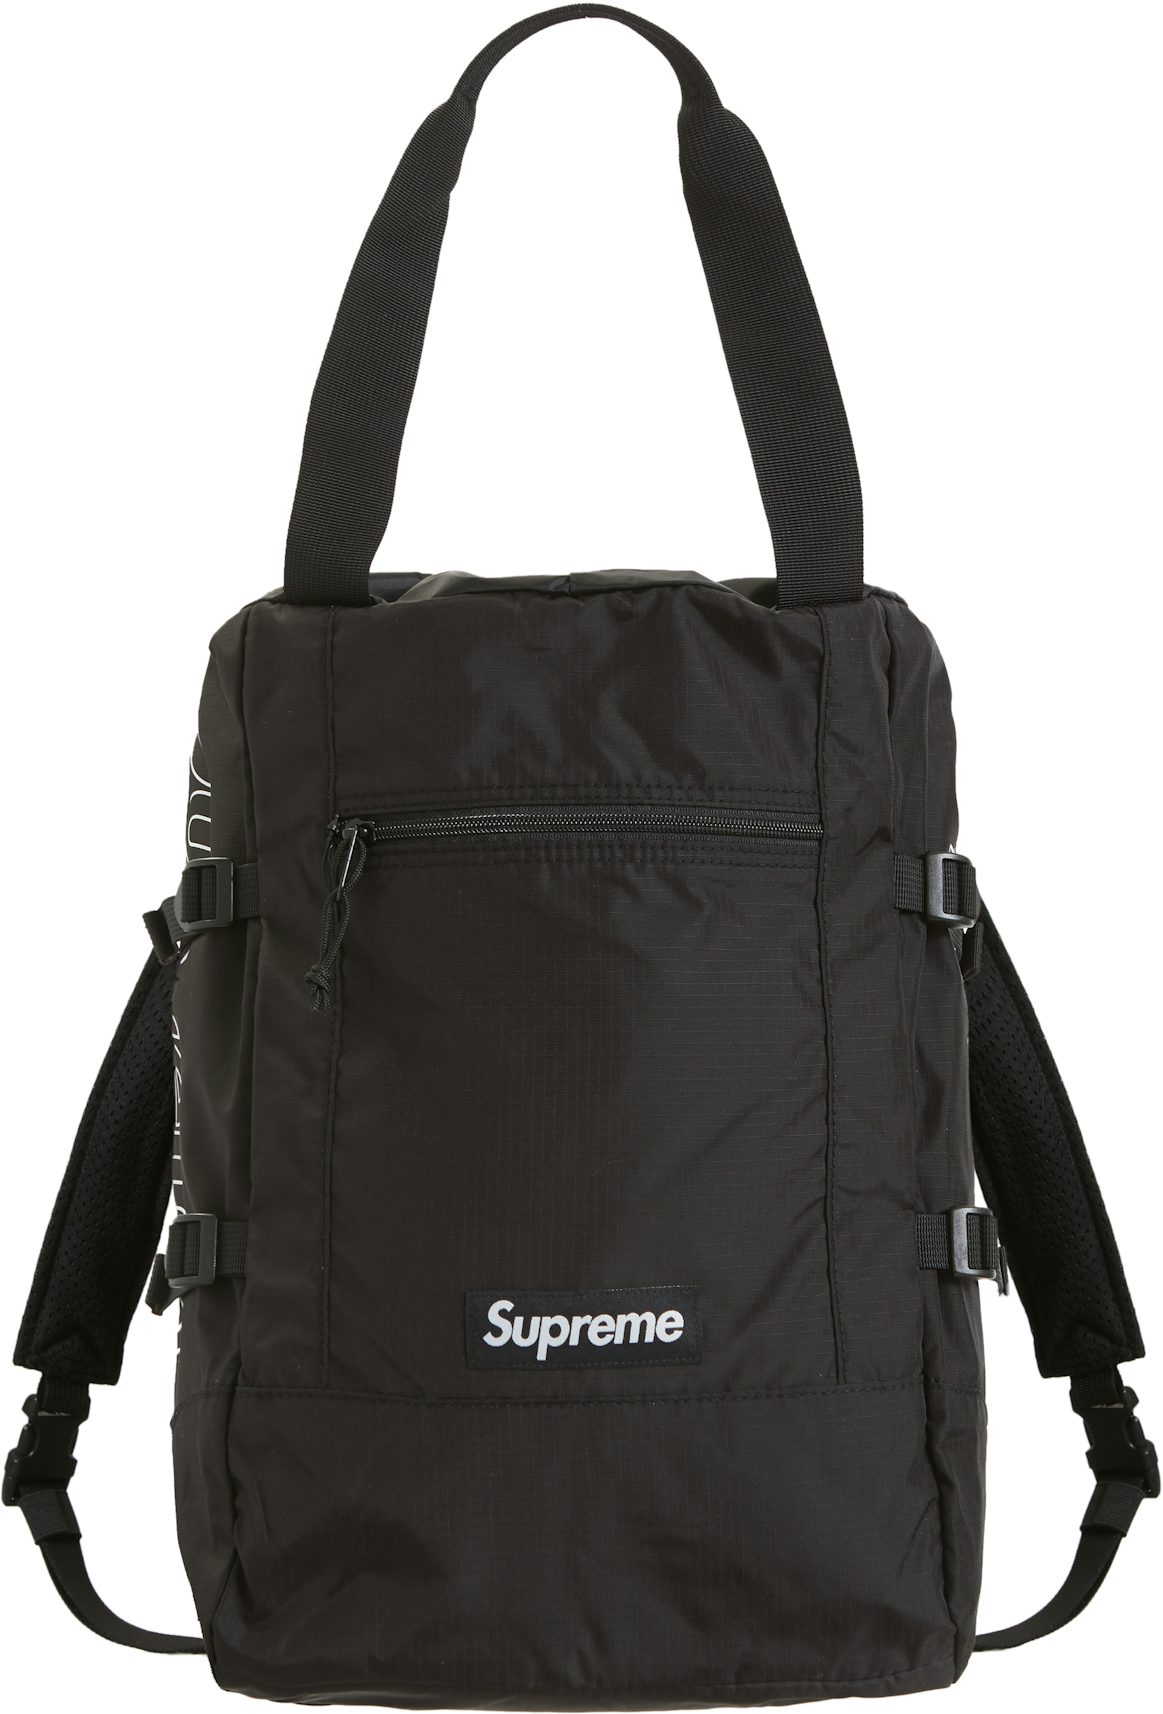 Supreme Canvas Backpack BlackSupreme Canvas Backpack Black - OFour